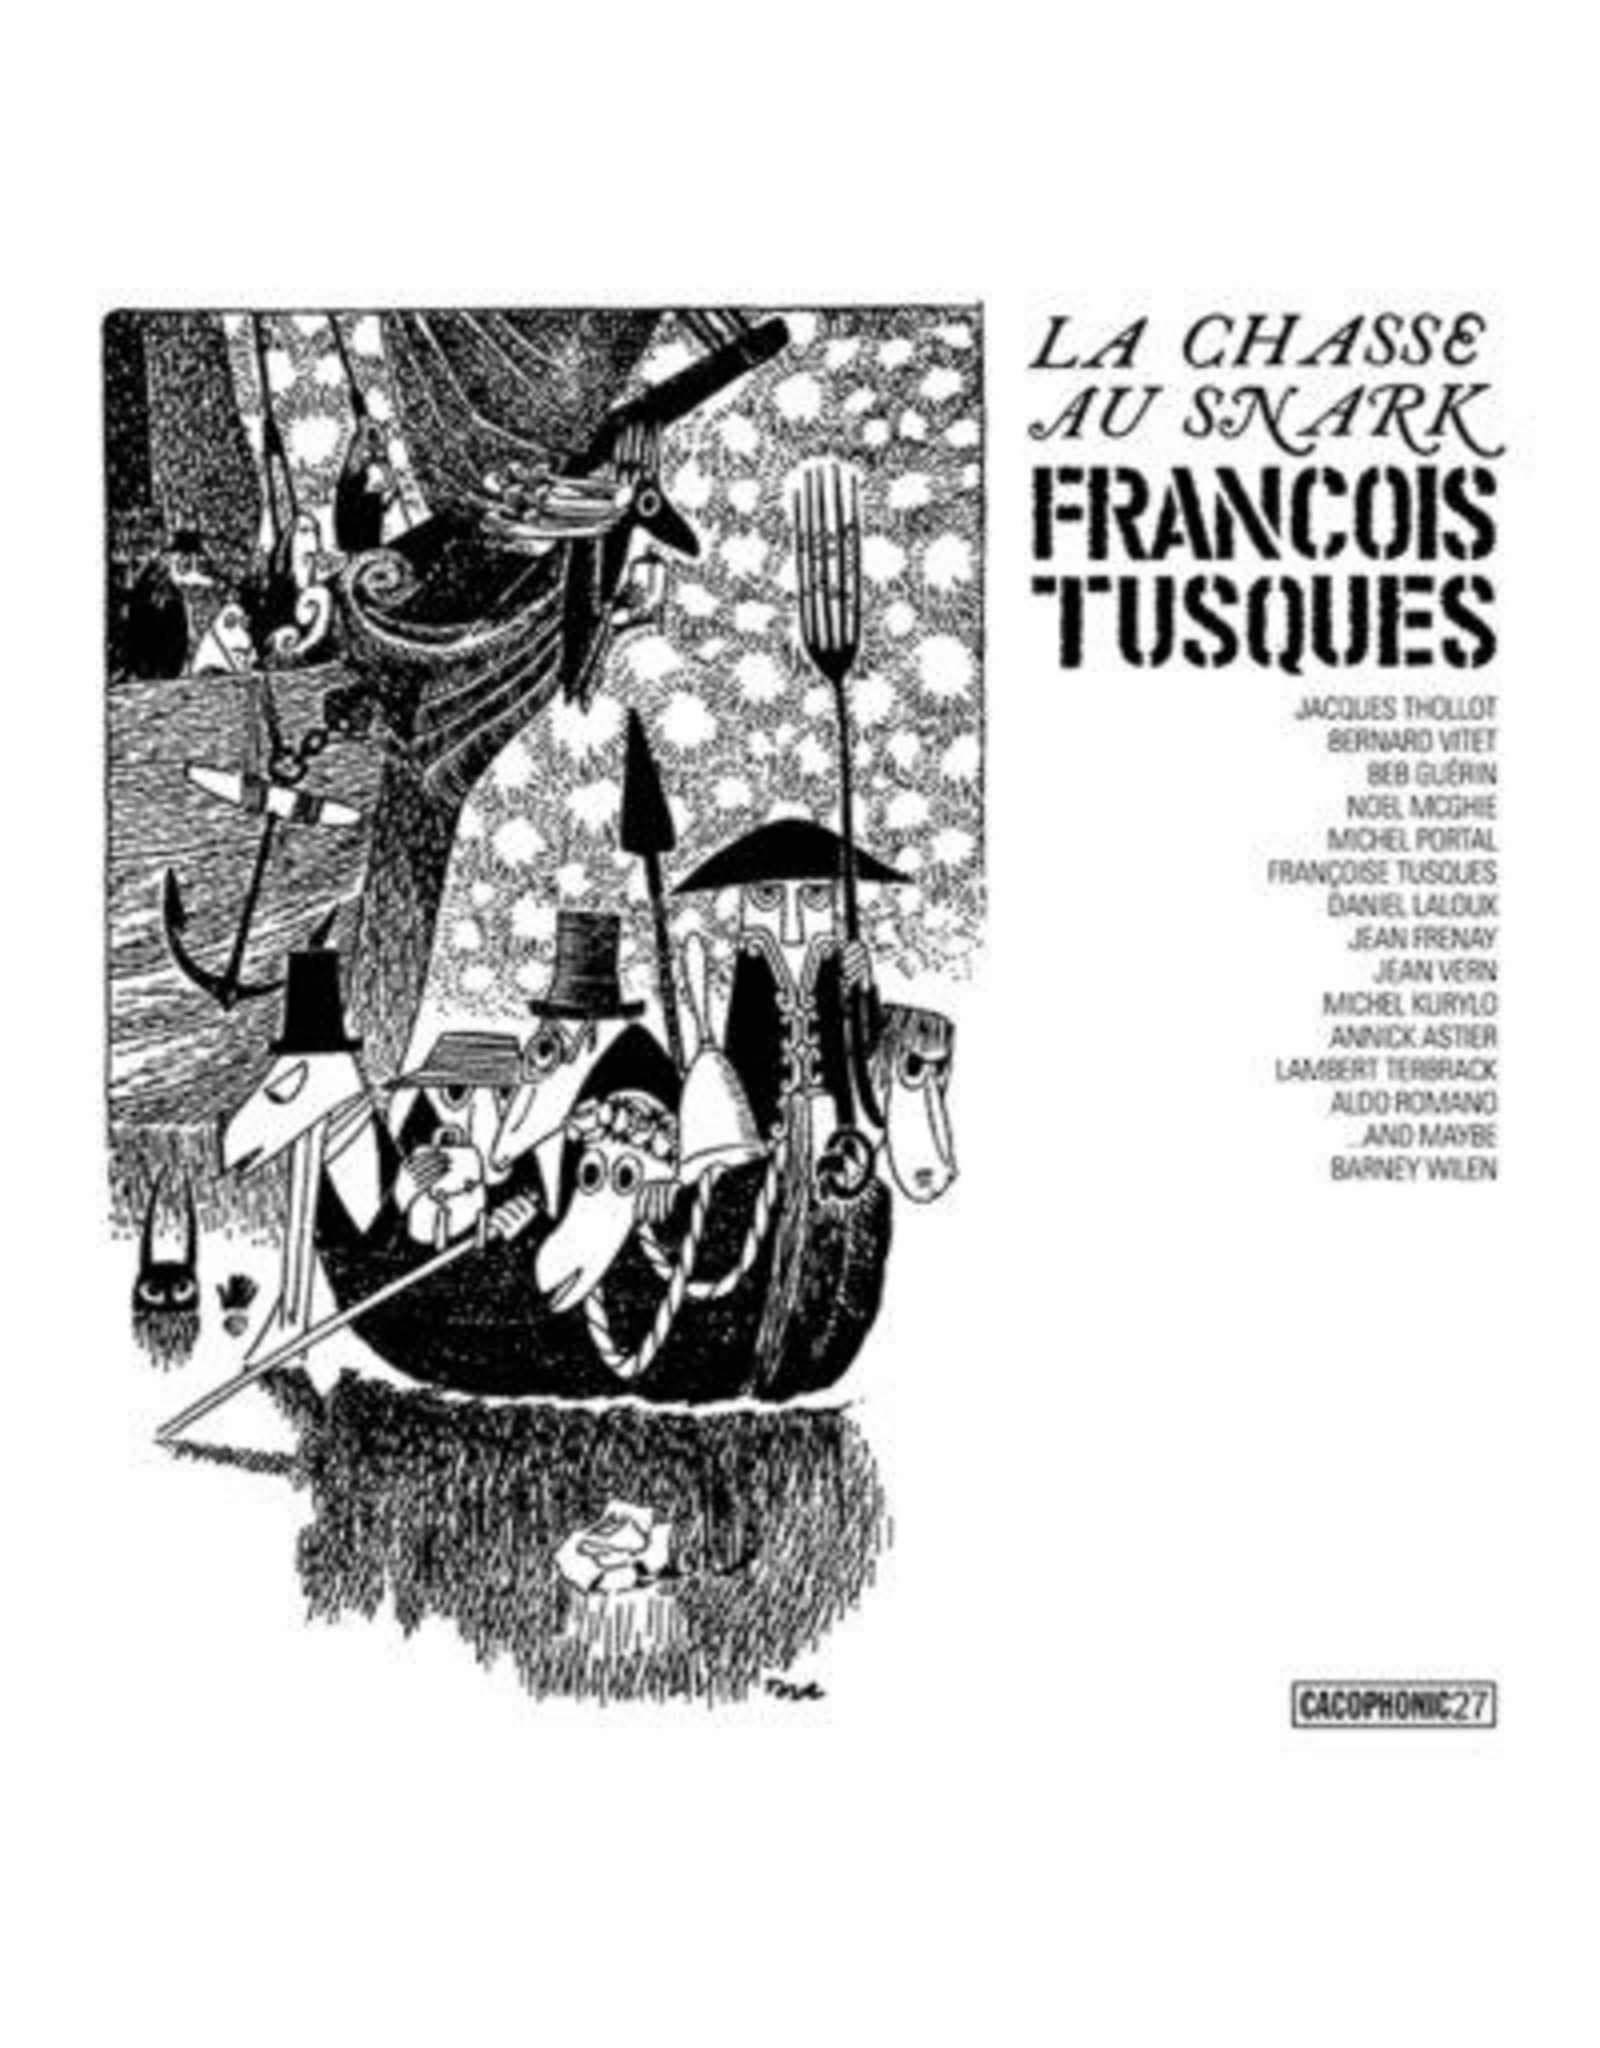 Cacophonic Tusques, Francois: La Chasse Au Snark LP